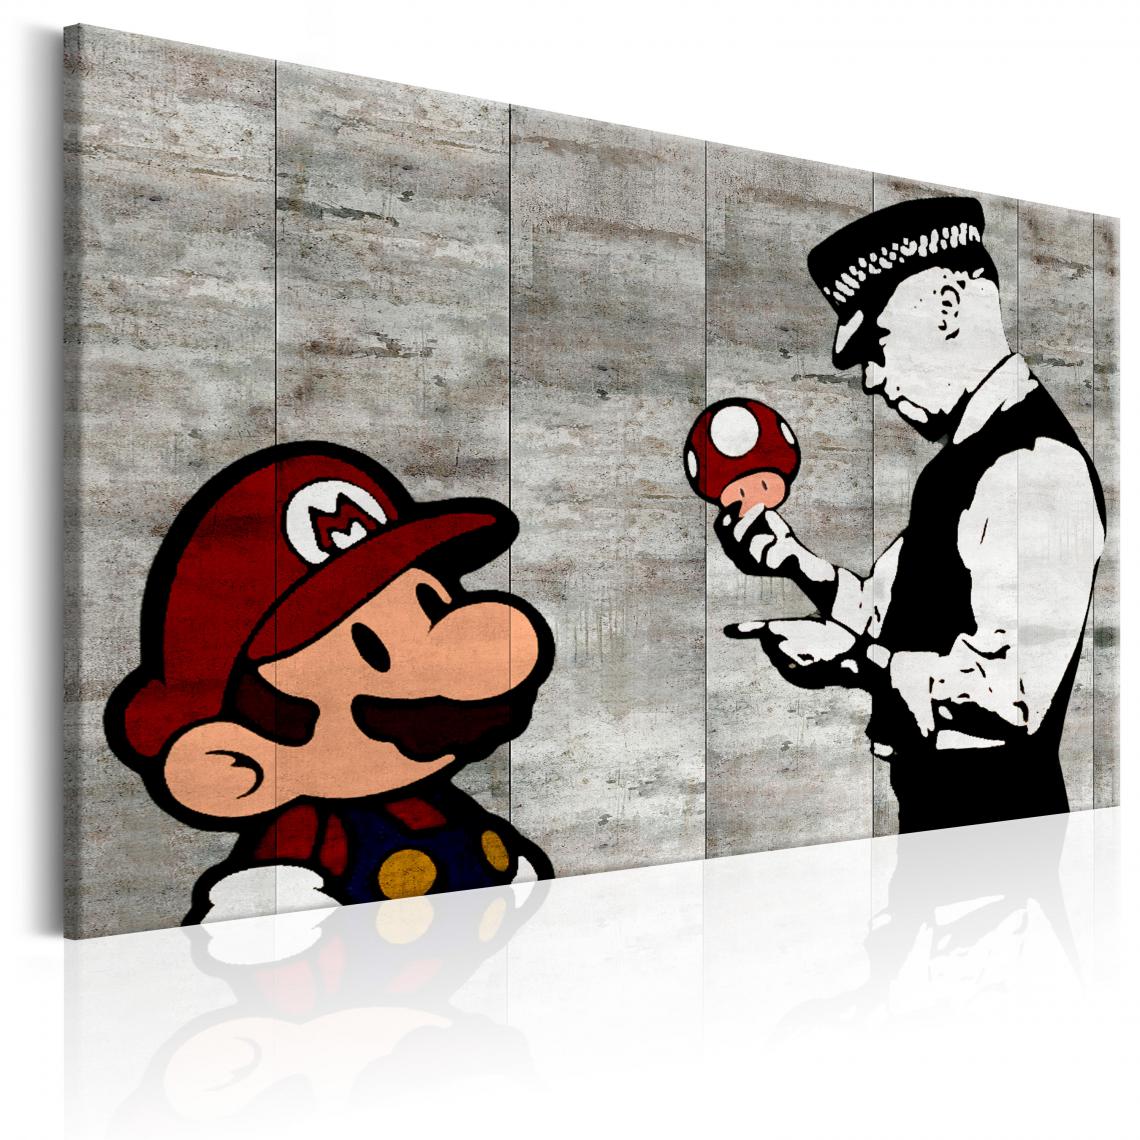 Decoshop26 - Tableau sur toile décoration murale image imprimée cadre en bois à suspendre Banksy sur le béton 120x80 cm 11_0003539 - Tableaux, peintures